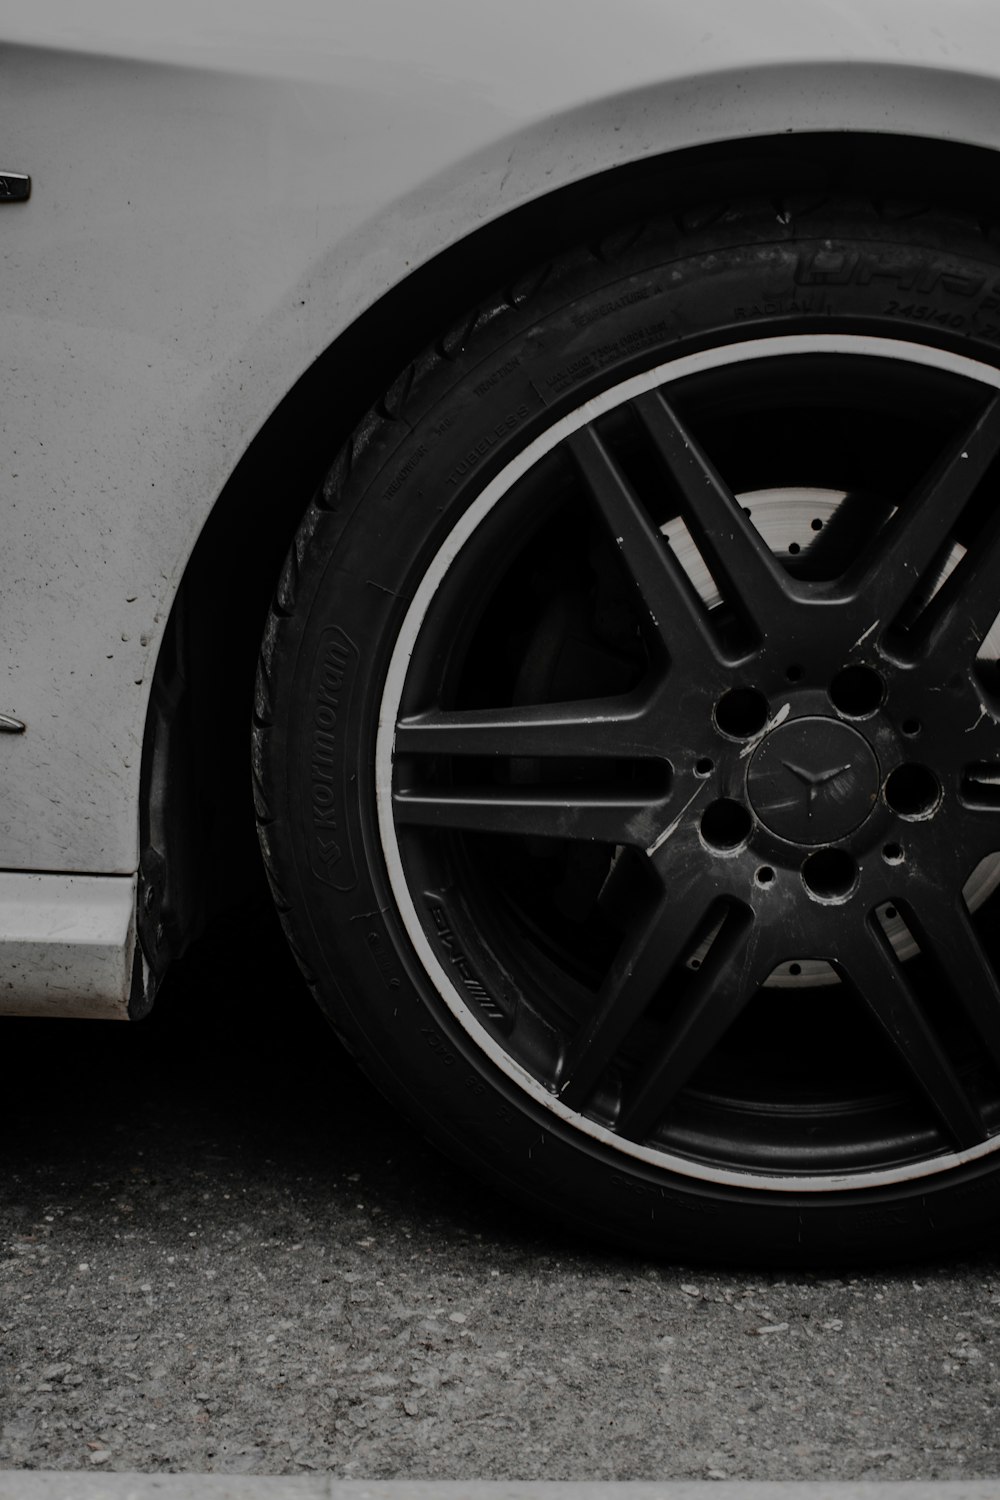 black 5 spoke wheel with tire